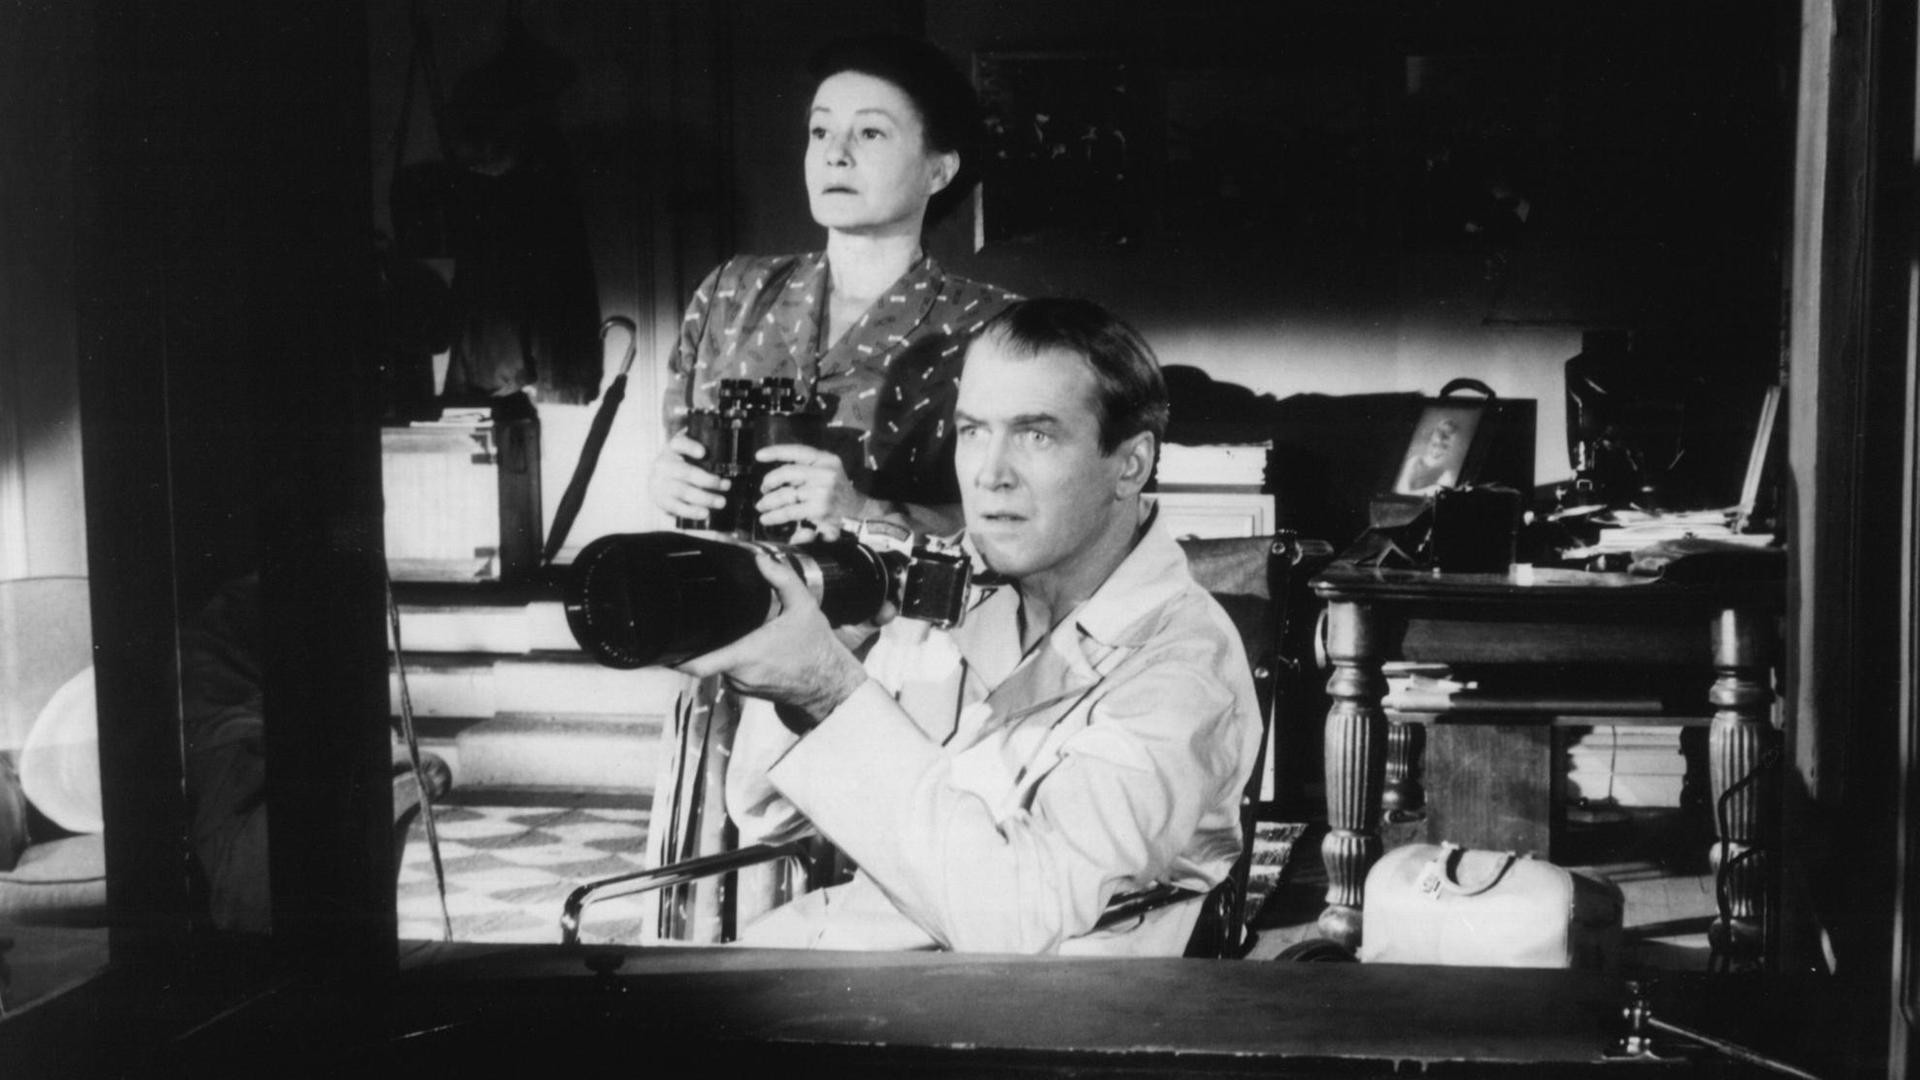 Szene aus "Das Fenster zum Hof": Ein Mann mit Teleobjektiv, im Rollstuhl sitzend und eine Frau schauen aus einem Fenster.